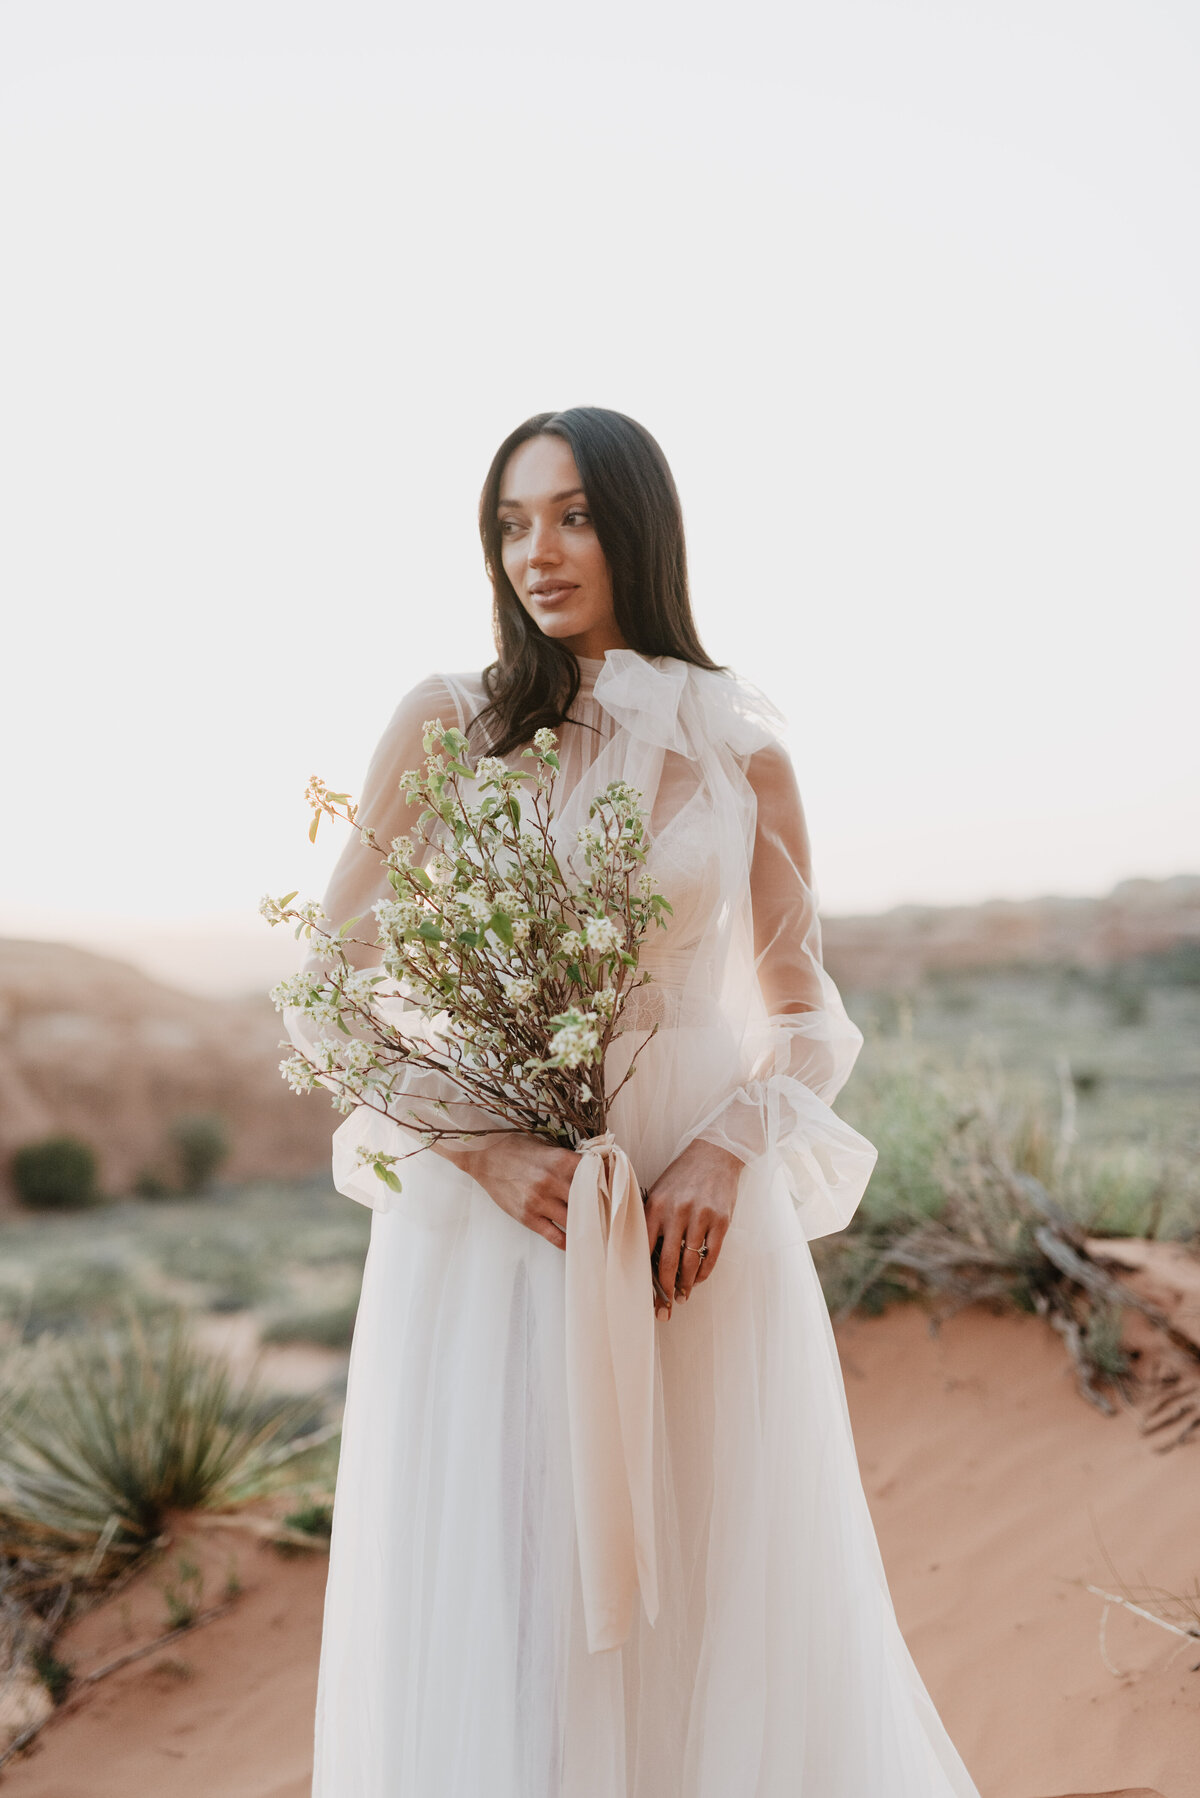 Utah elopement photographer captures bride holding bridal bouquet